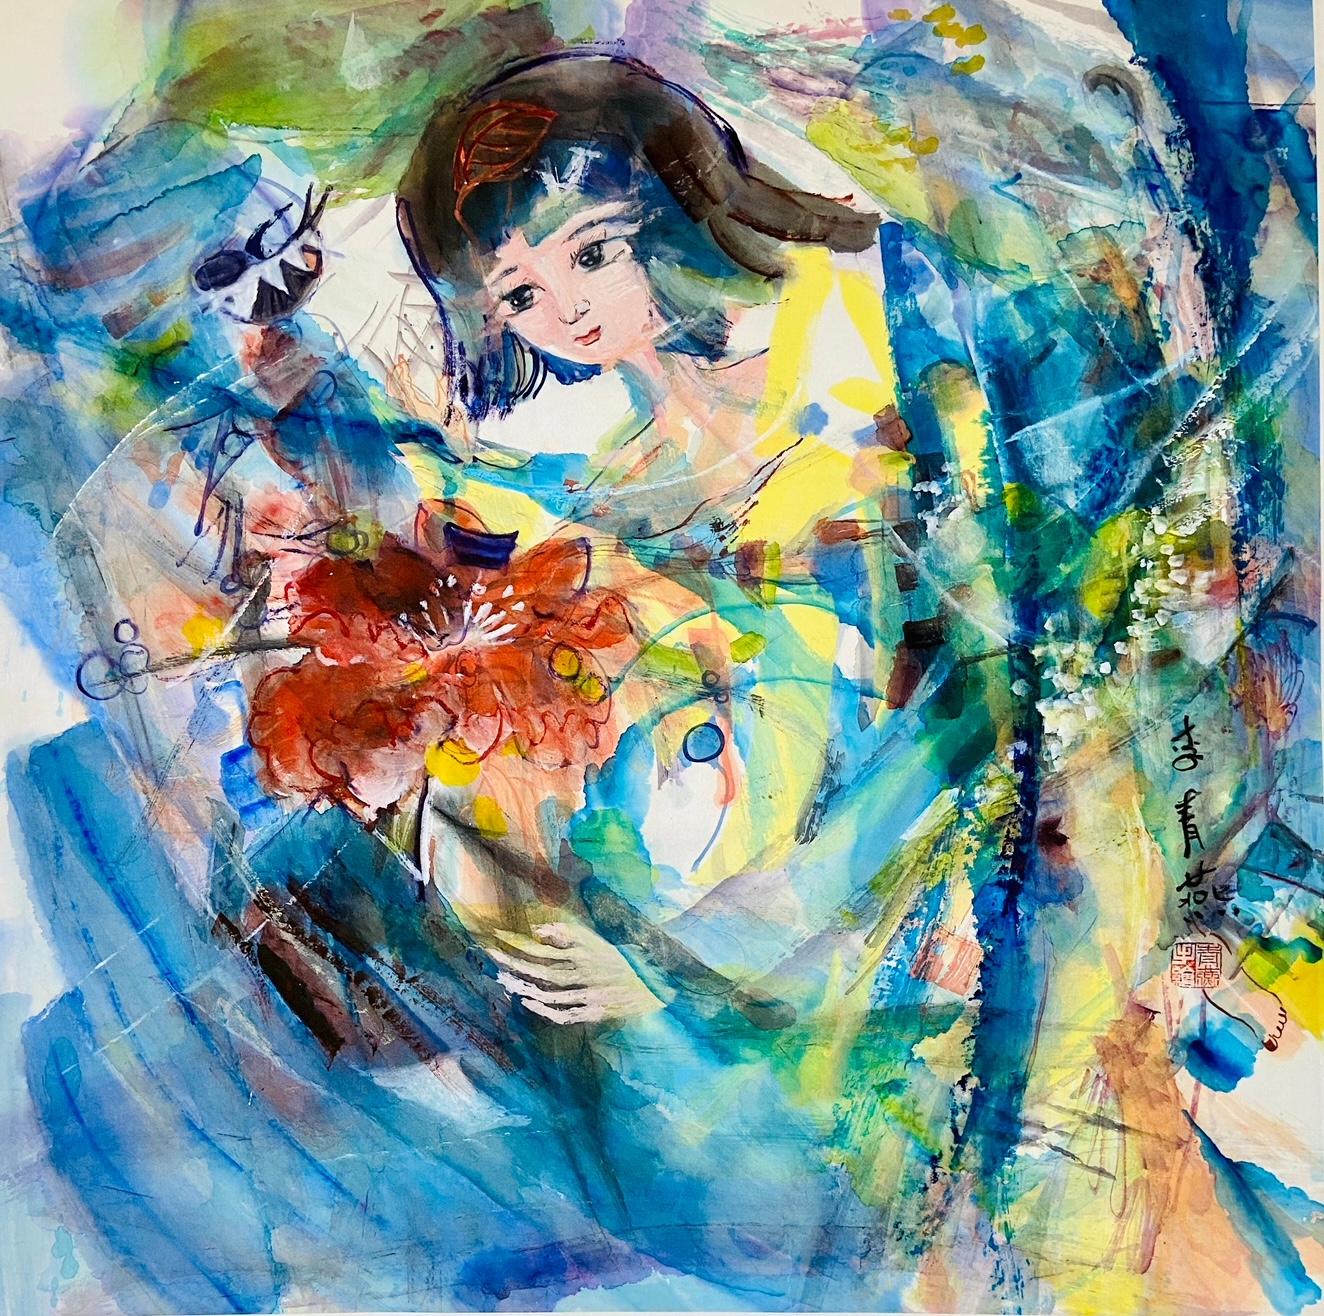 Tusche & Aquarell auf Reispapier, Gerahmt 80 x 80 x 5 cm

Li Qingyan ist eine 1972 geborene chinesische Künstlerin, die in Peking, China, lebt und arbeitet. Qingyan ist von Beruf Maler. Sie ist Mitglied der China Contemporary Women's Painting